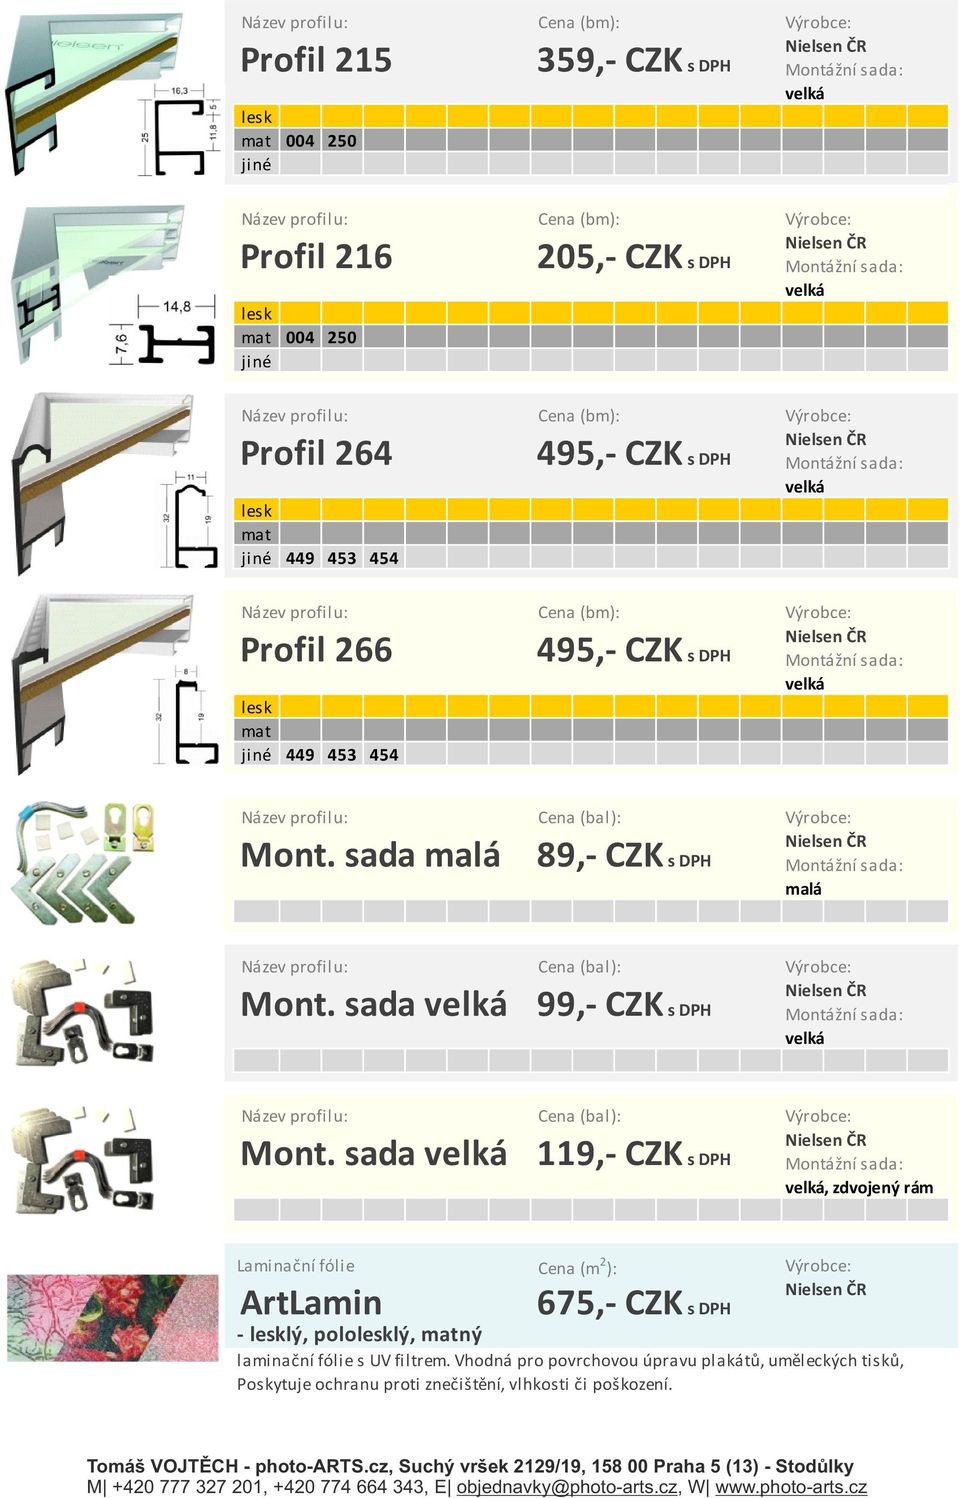 sada 99,- CZK s DPH Montážní sada: Název profilu: Cena (bal): Výrobce: Mont.